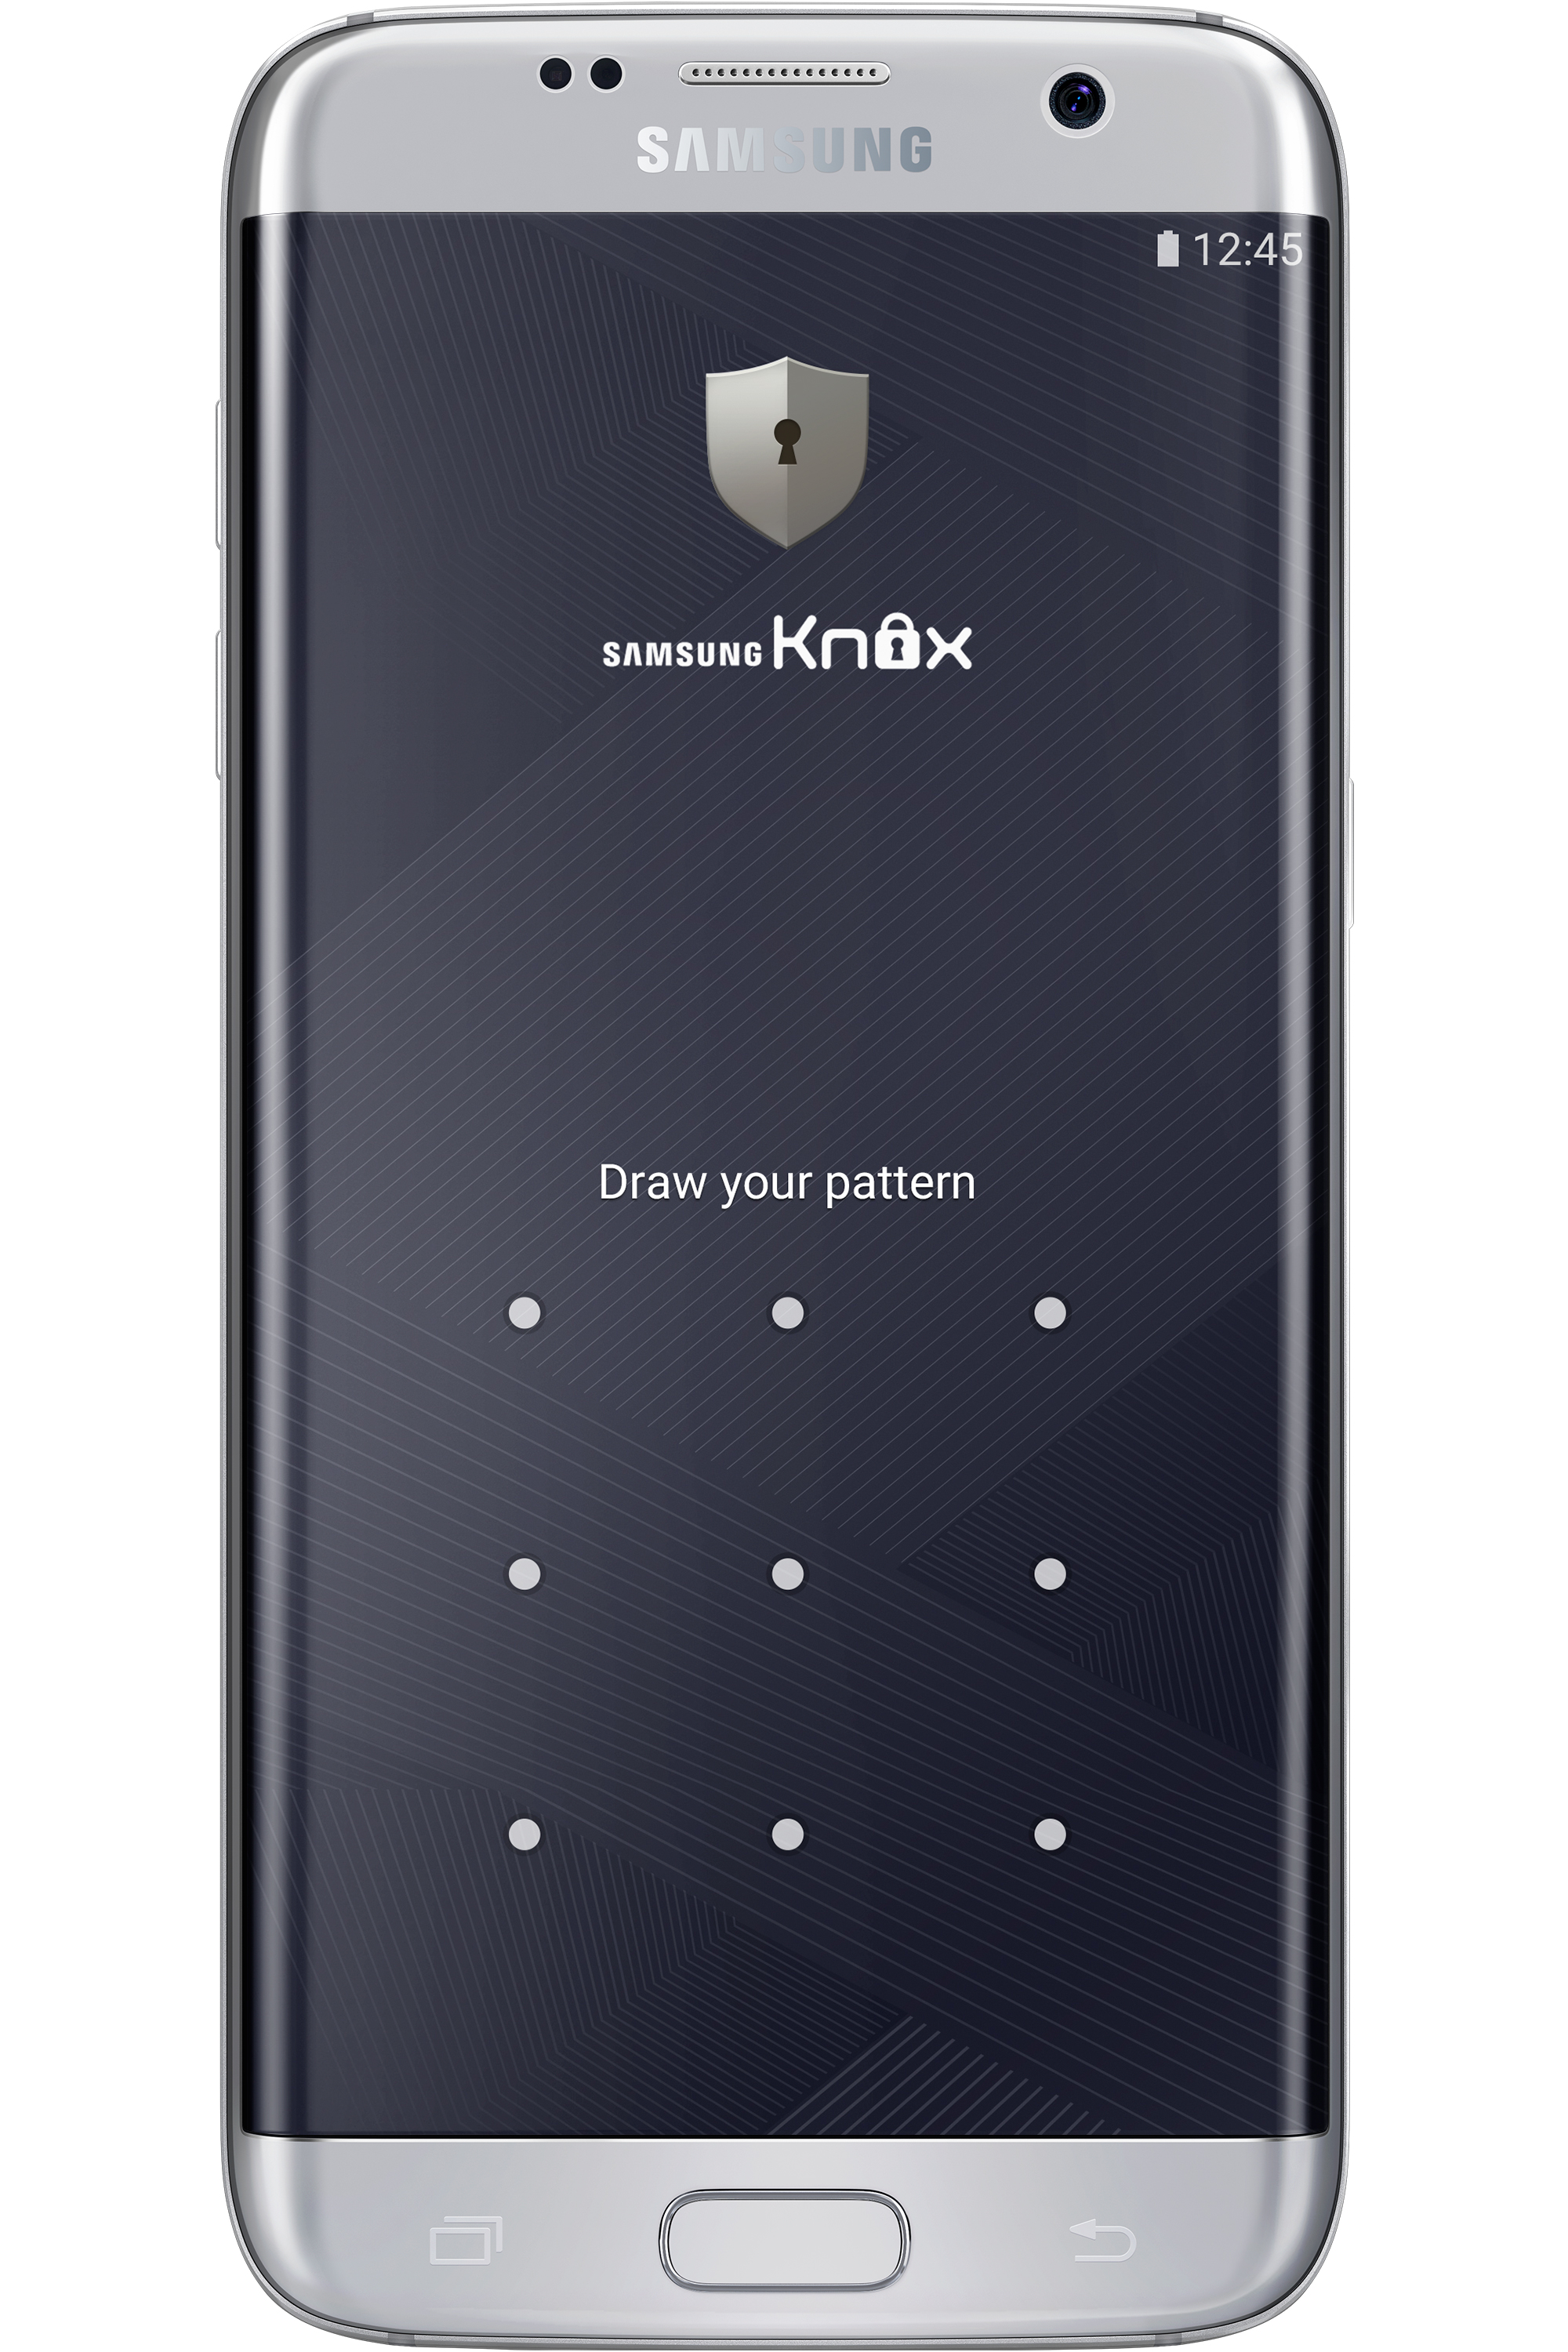 Samsung KNOX, en güvenli mobil cihaz platformu olarak gösteriliyor